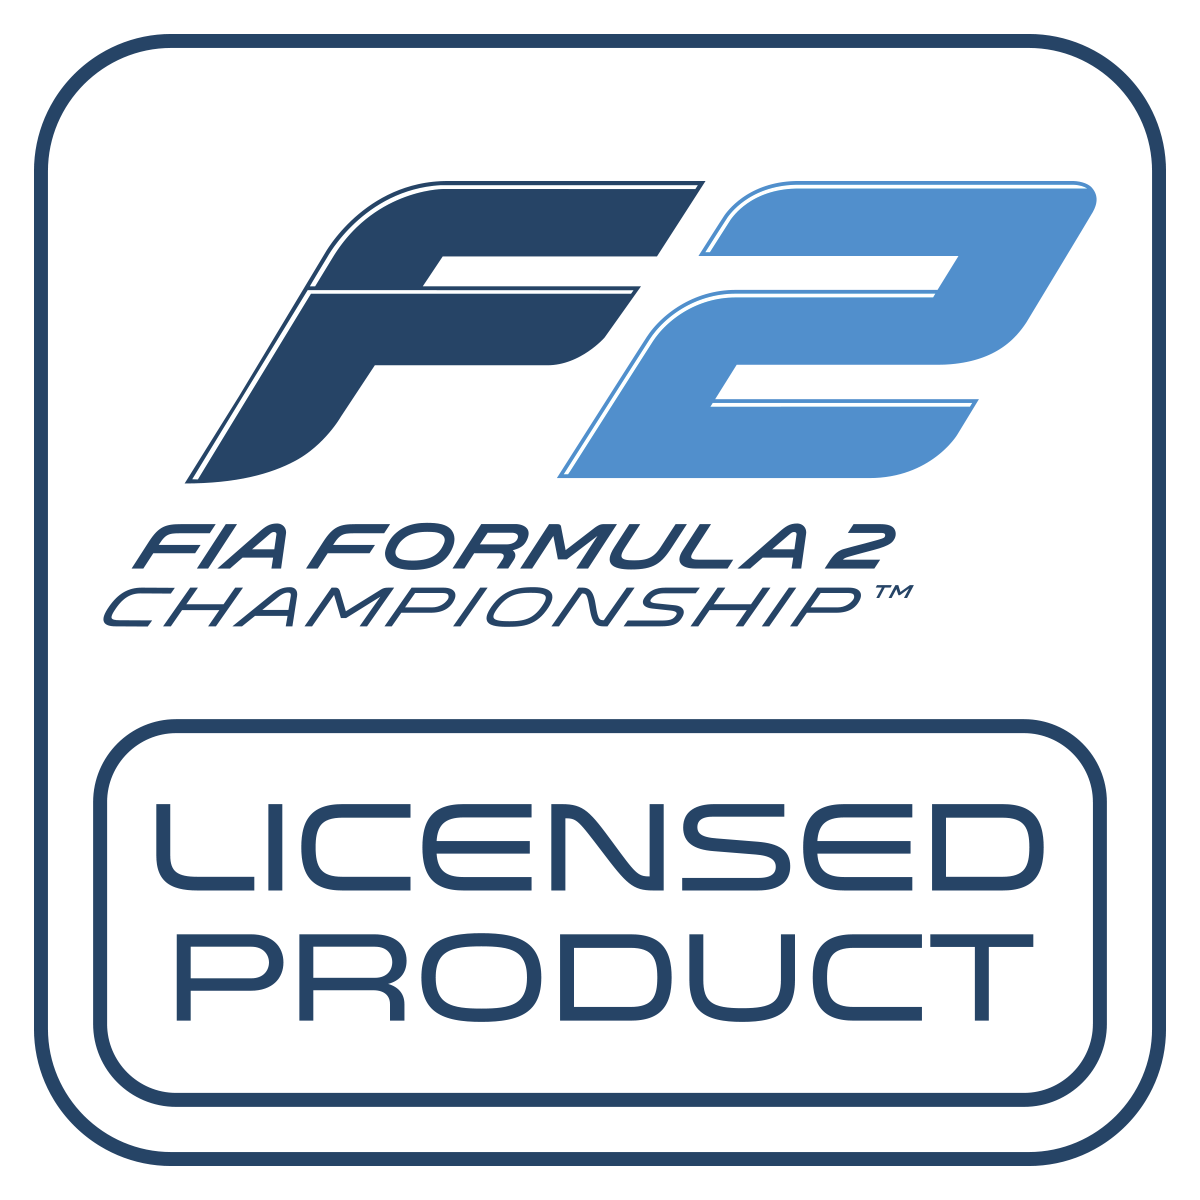 Logotipo del producto con licencia de la F2